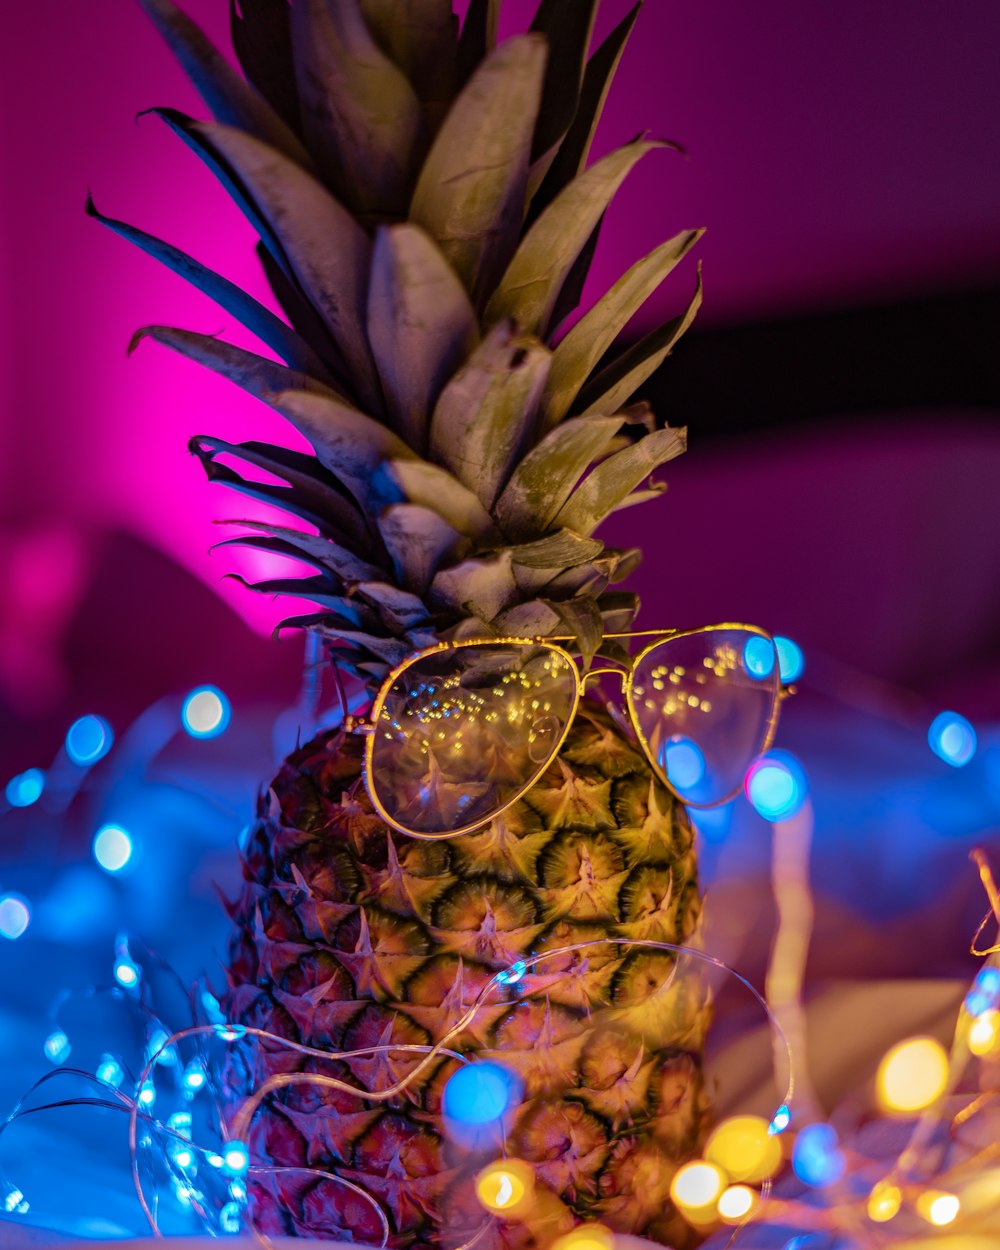 sunglasses on pineapple